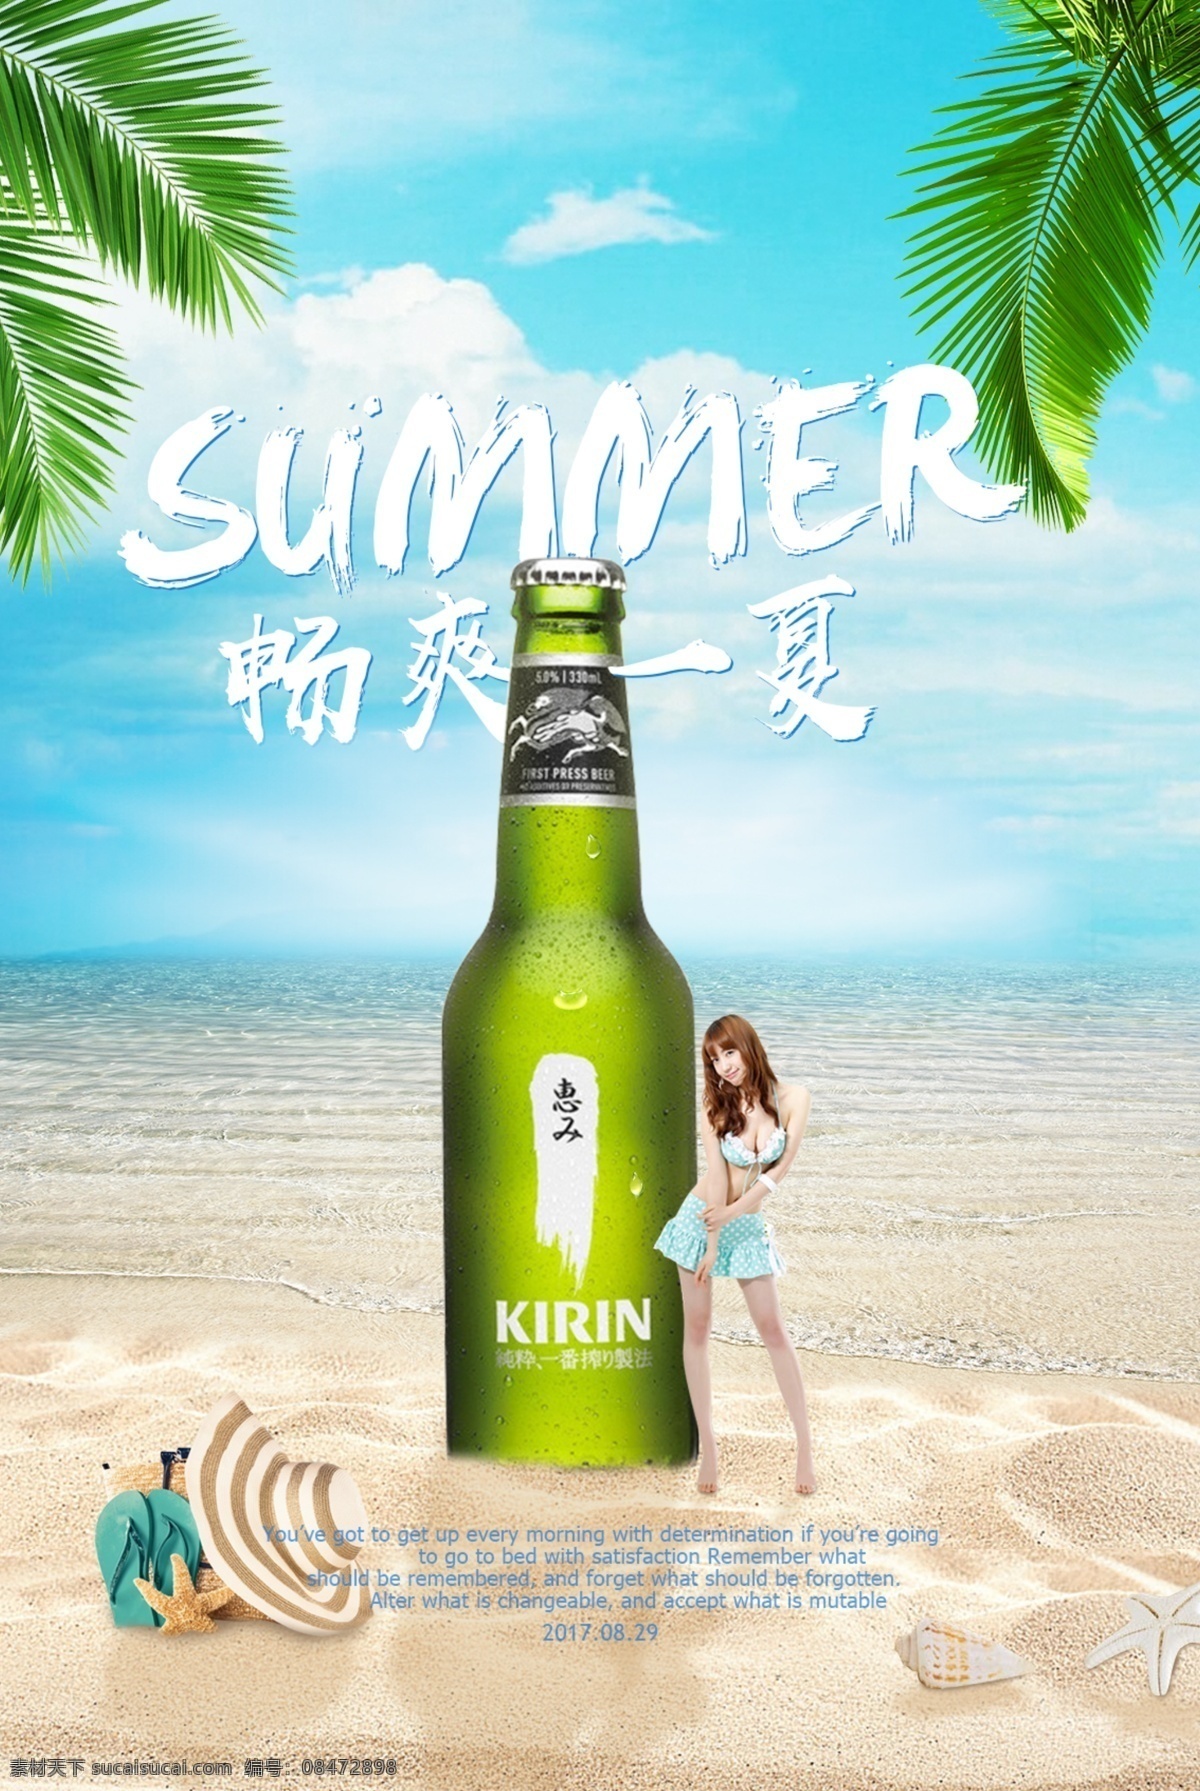 啤酒 合成 创意 海报 畅爽一夏 比基尼美女 夏夏日 沙滩 海滩 大海 夏日 暑假 饮品